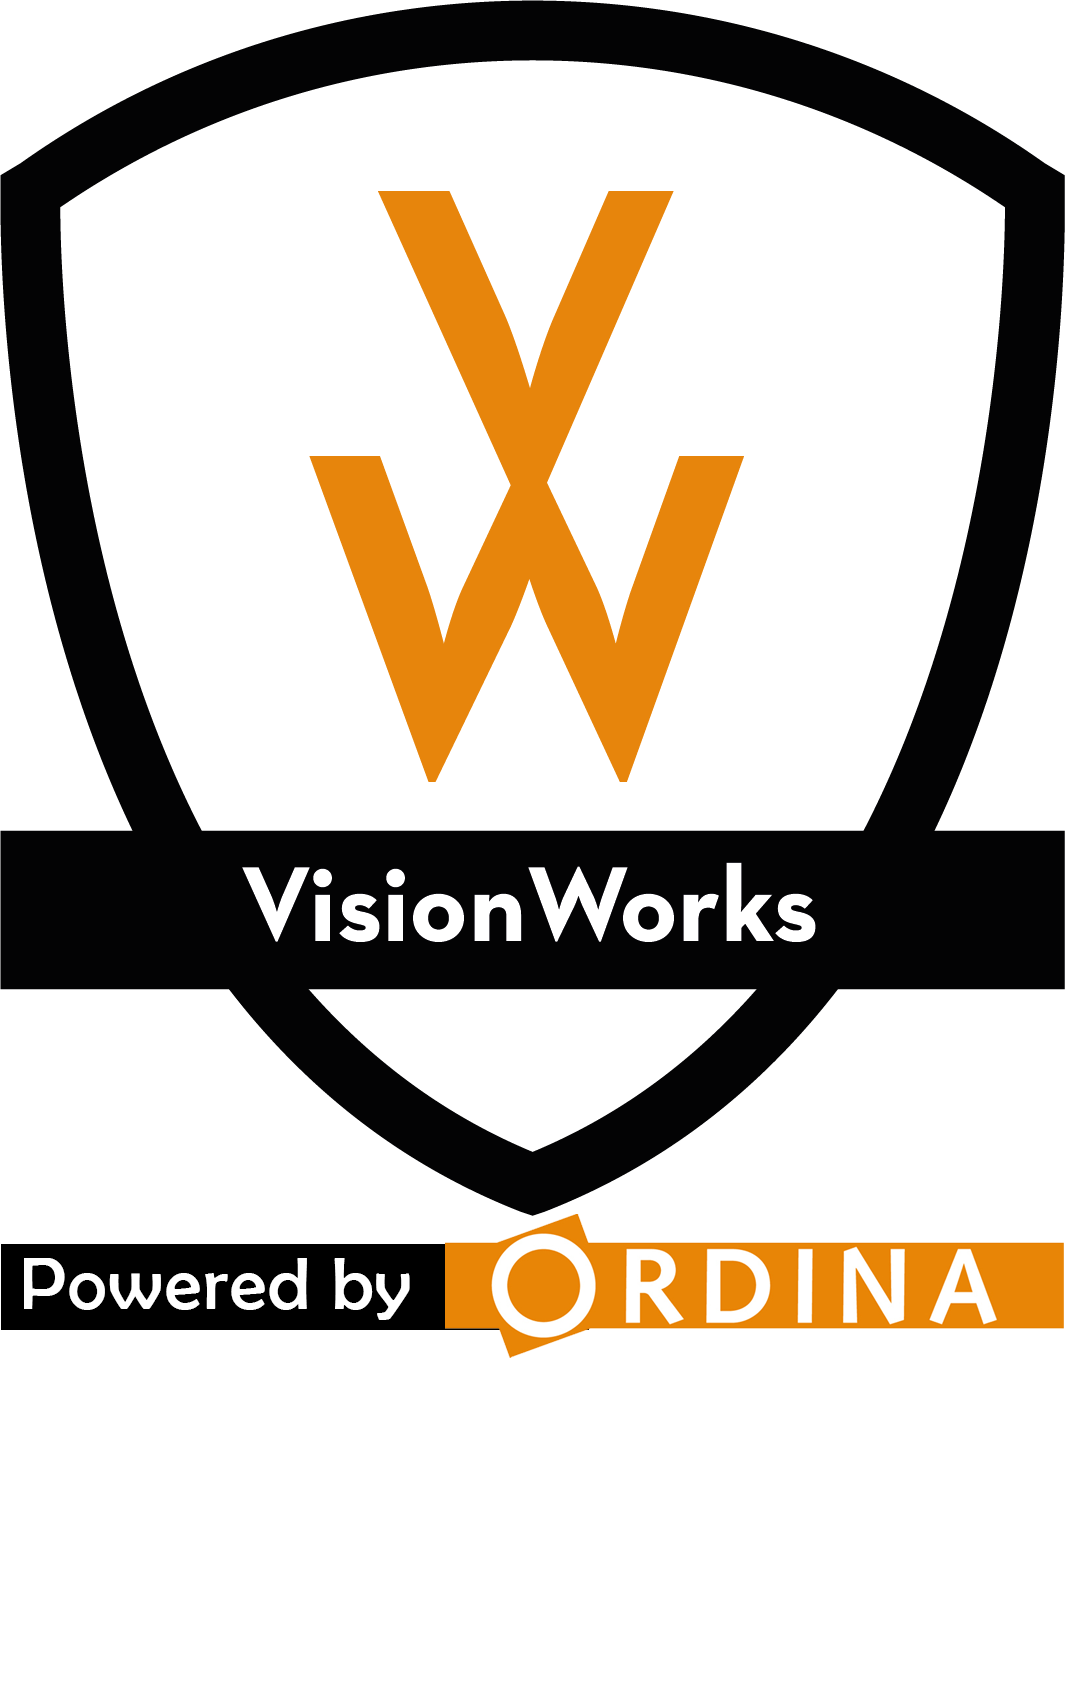 Visionworks Logo - VisionWorks data experts